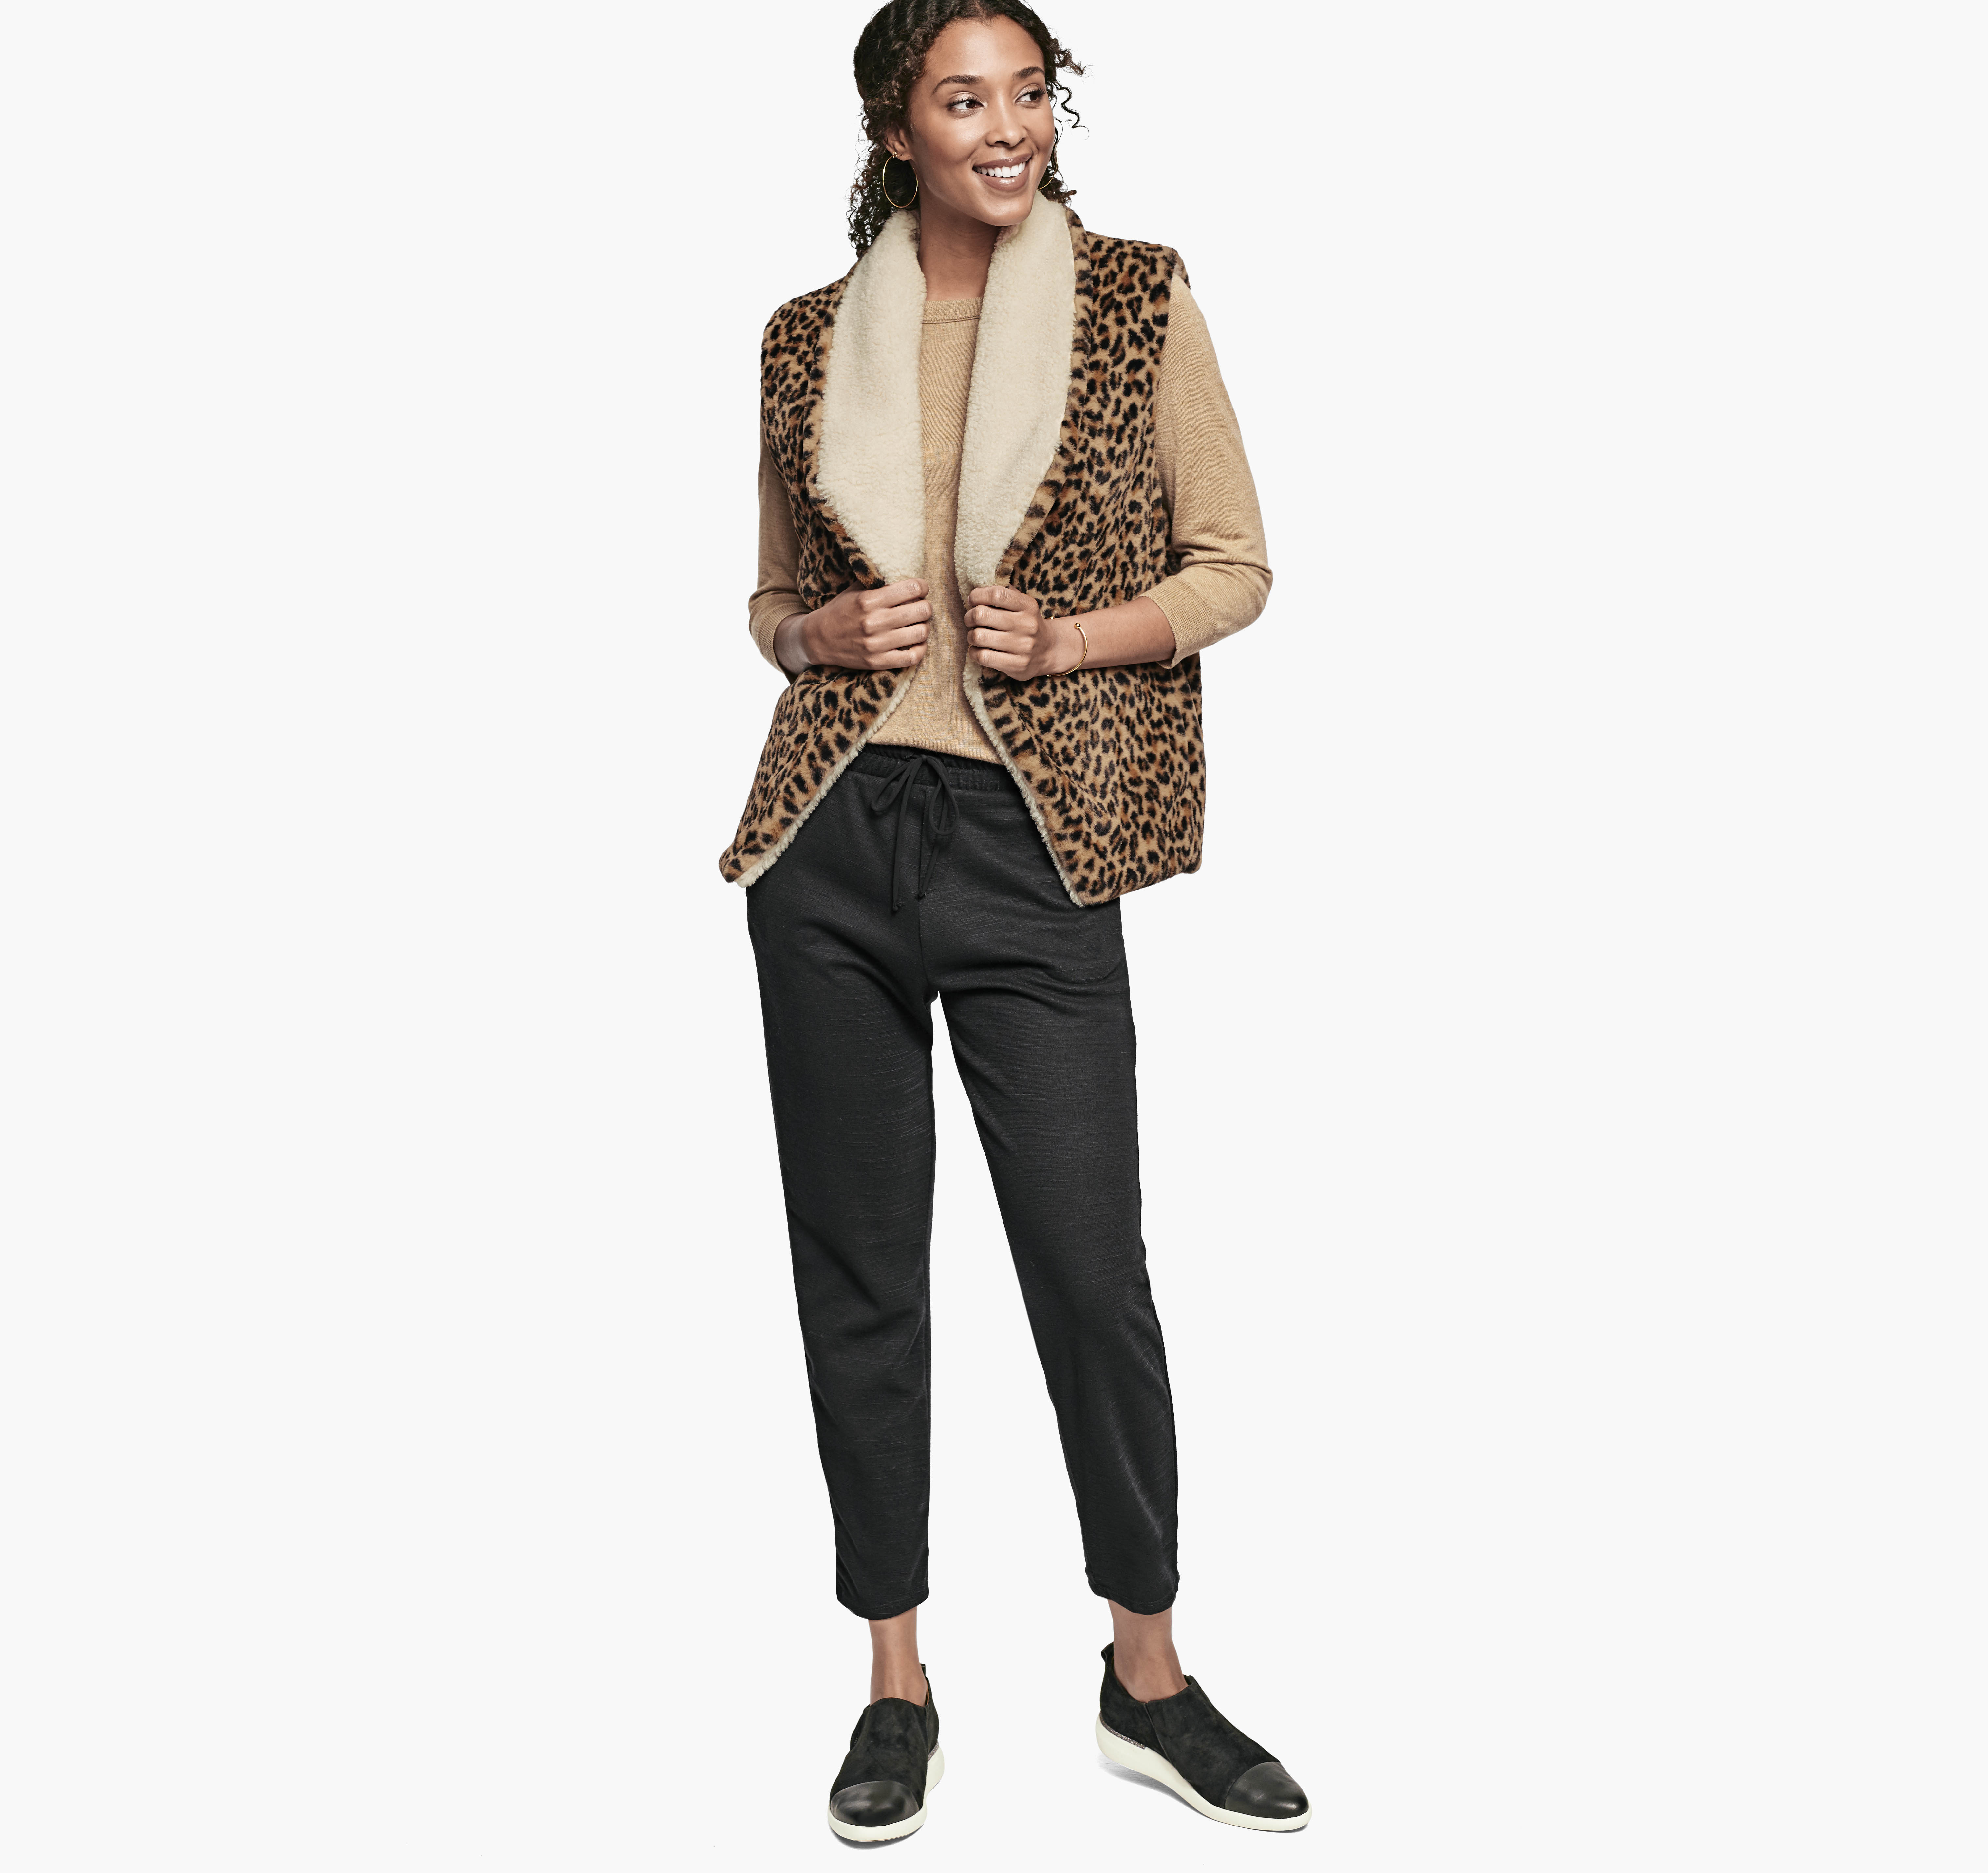 Reversible Sleeveless Mink Jacket - Women - Ready-to-Wear